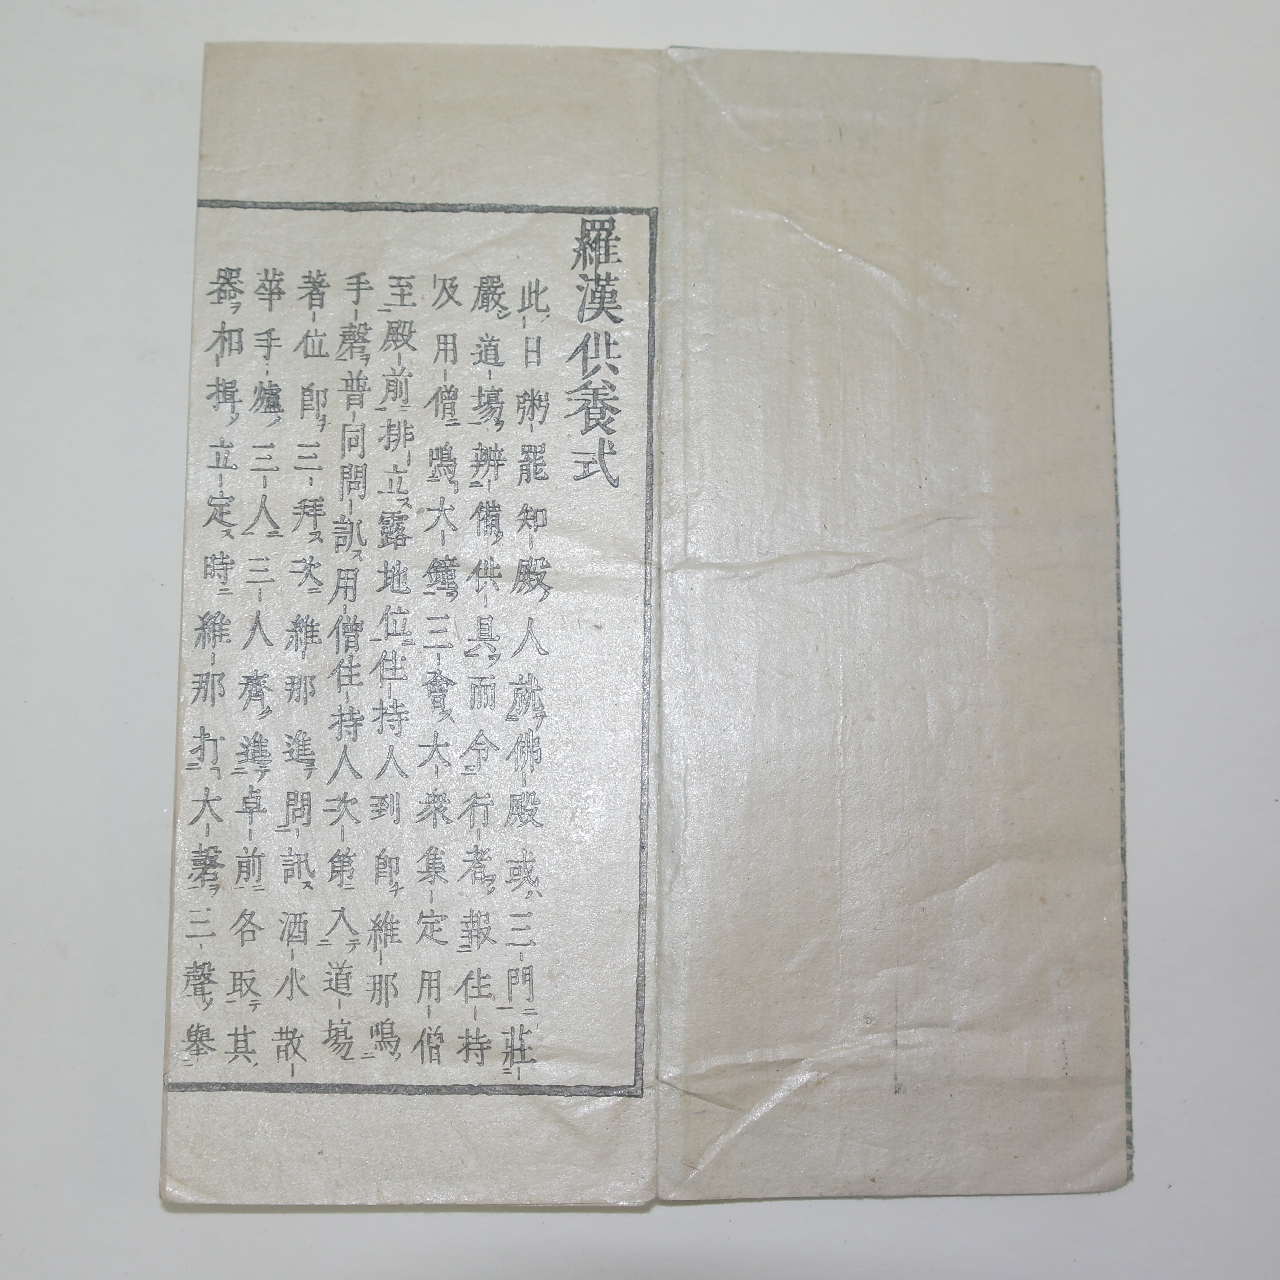 에도시기 일본목판본 불경절첩본 라한공양식(羅漢供養式) 1책완질